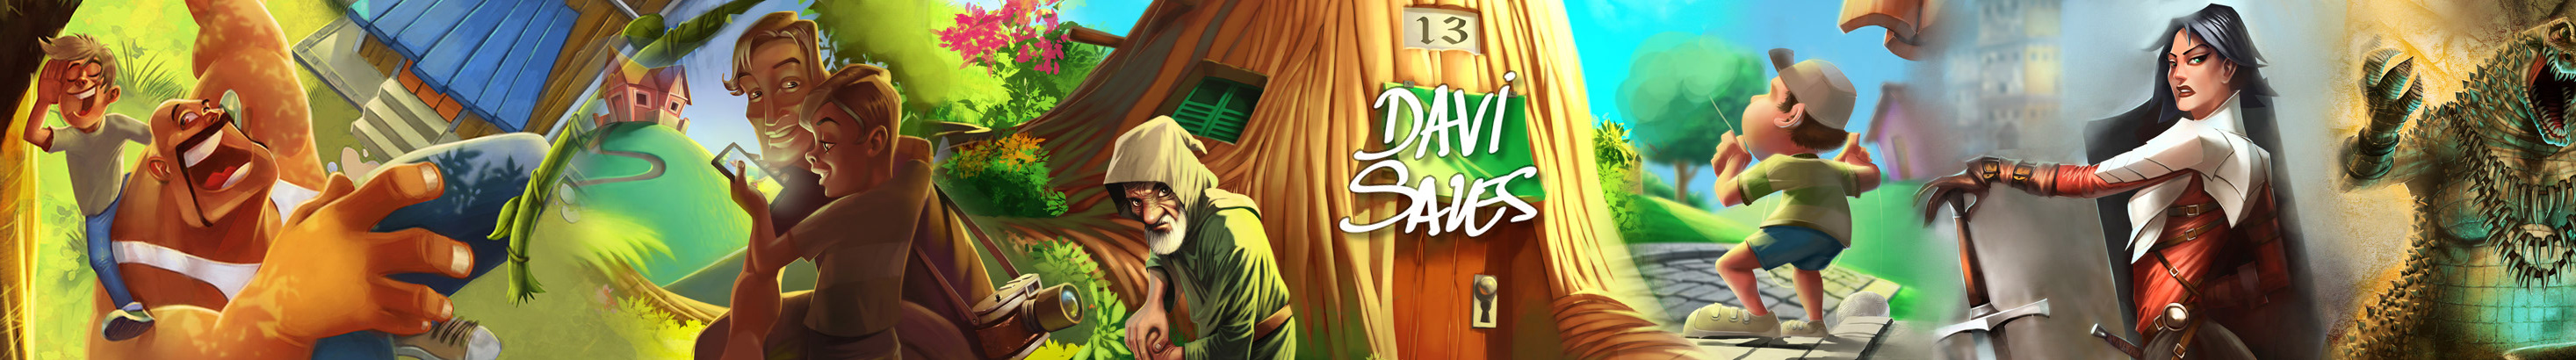 Davi Sales's profile banner